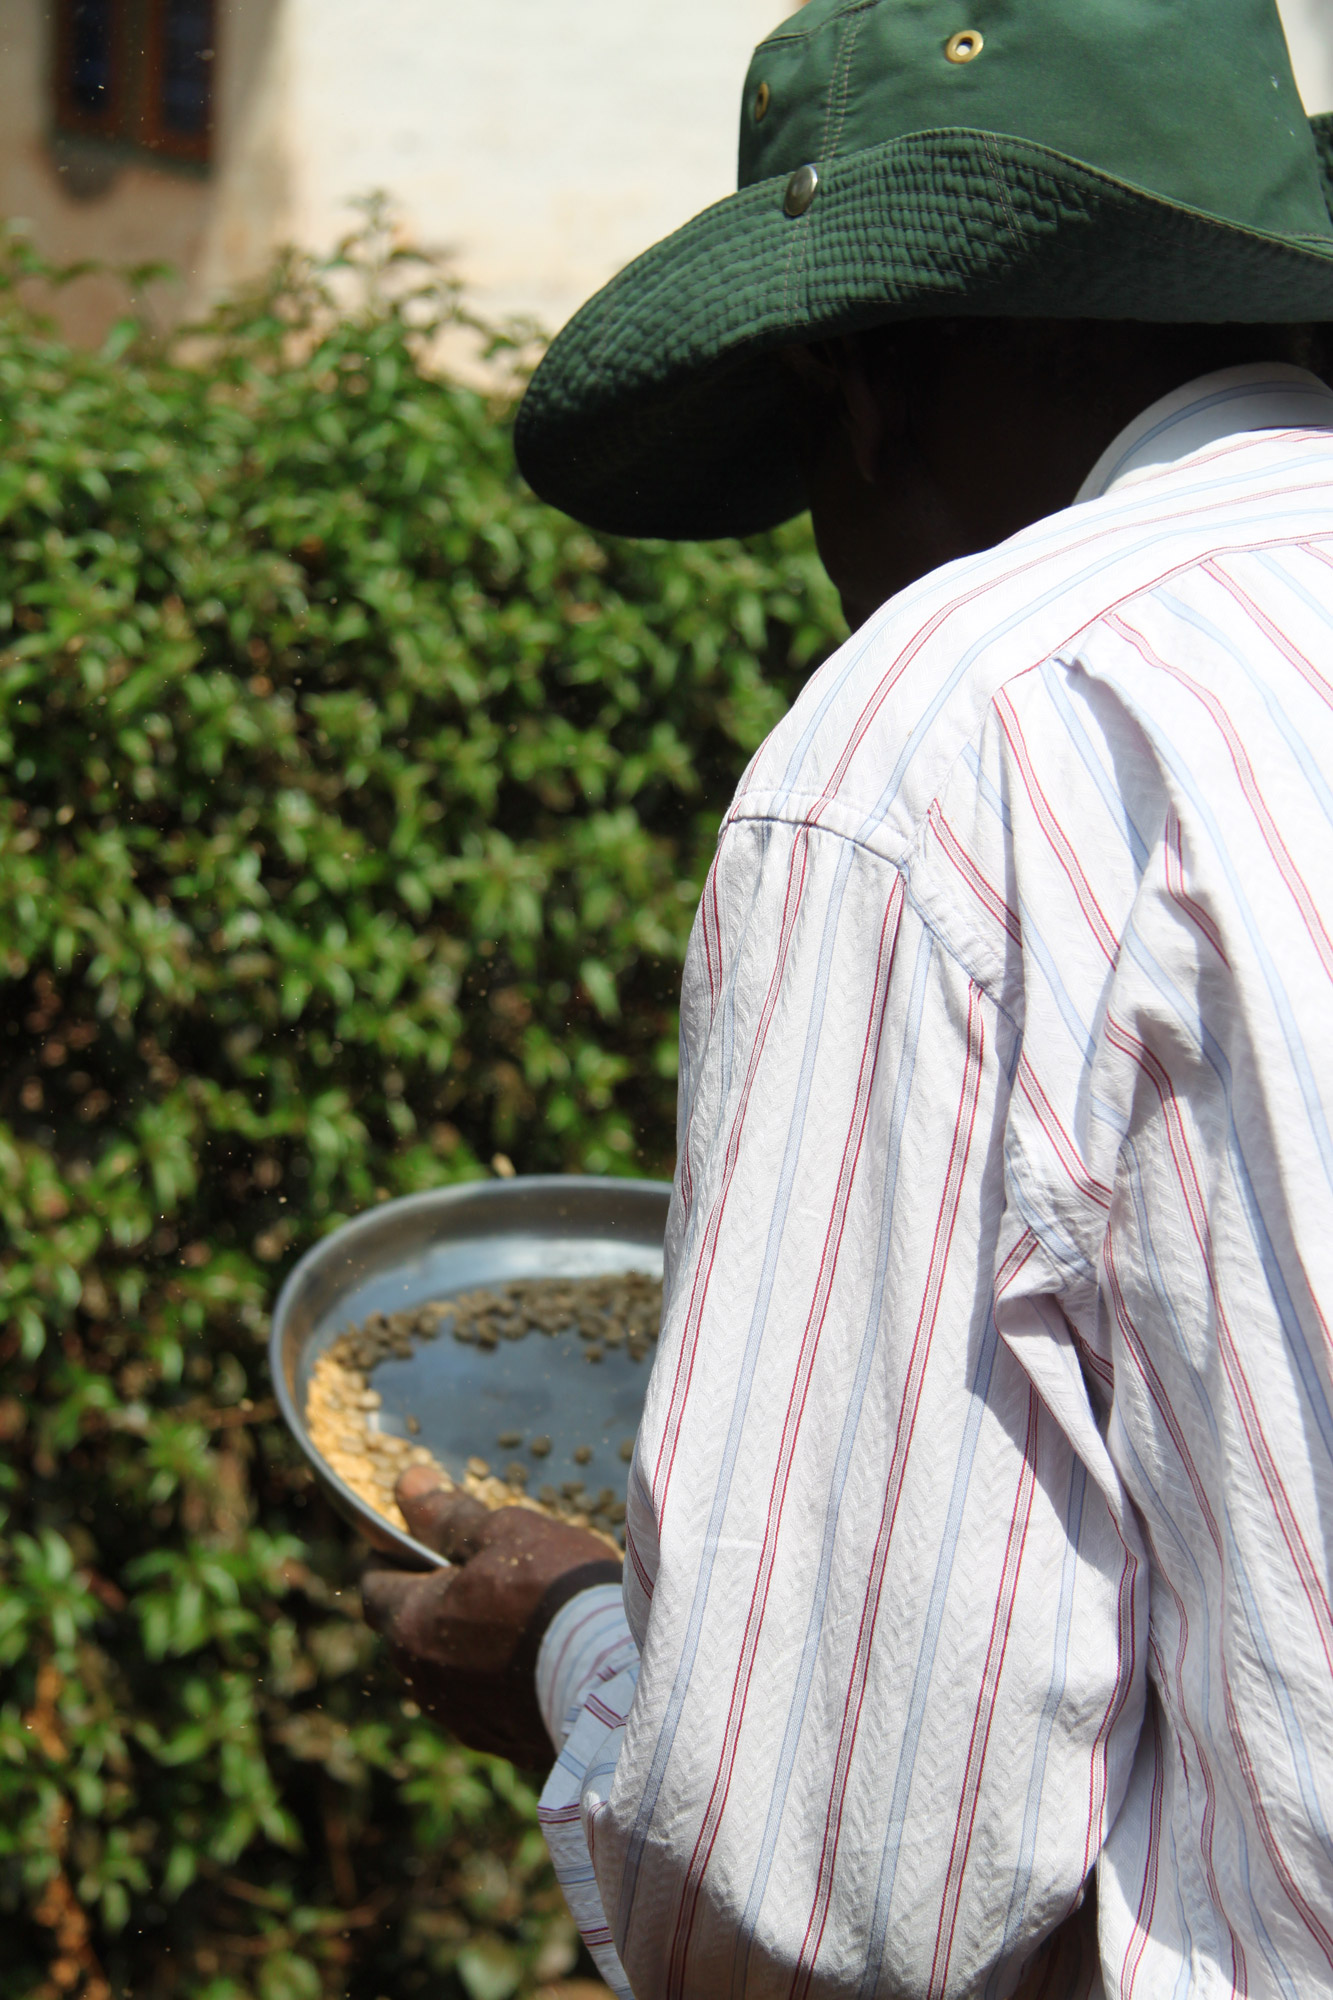 Een bezoek aan een koffieplantage in Tanzania